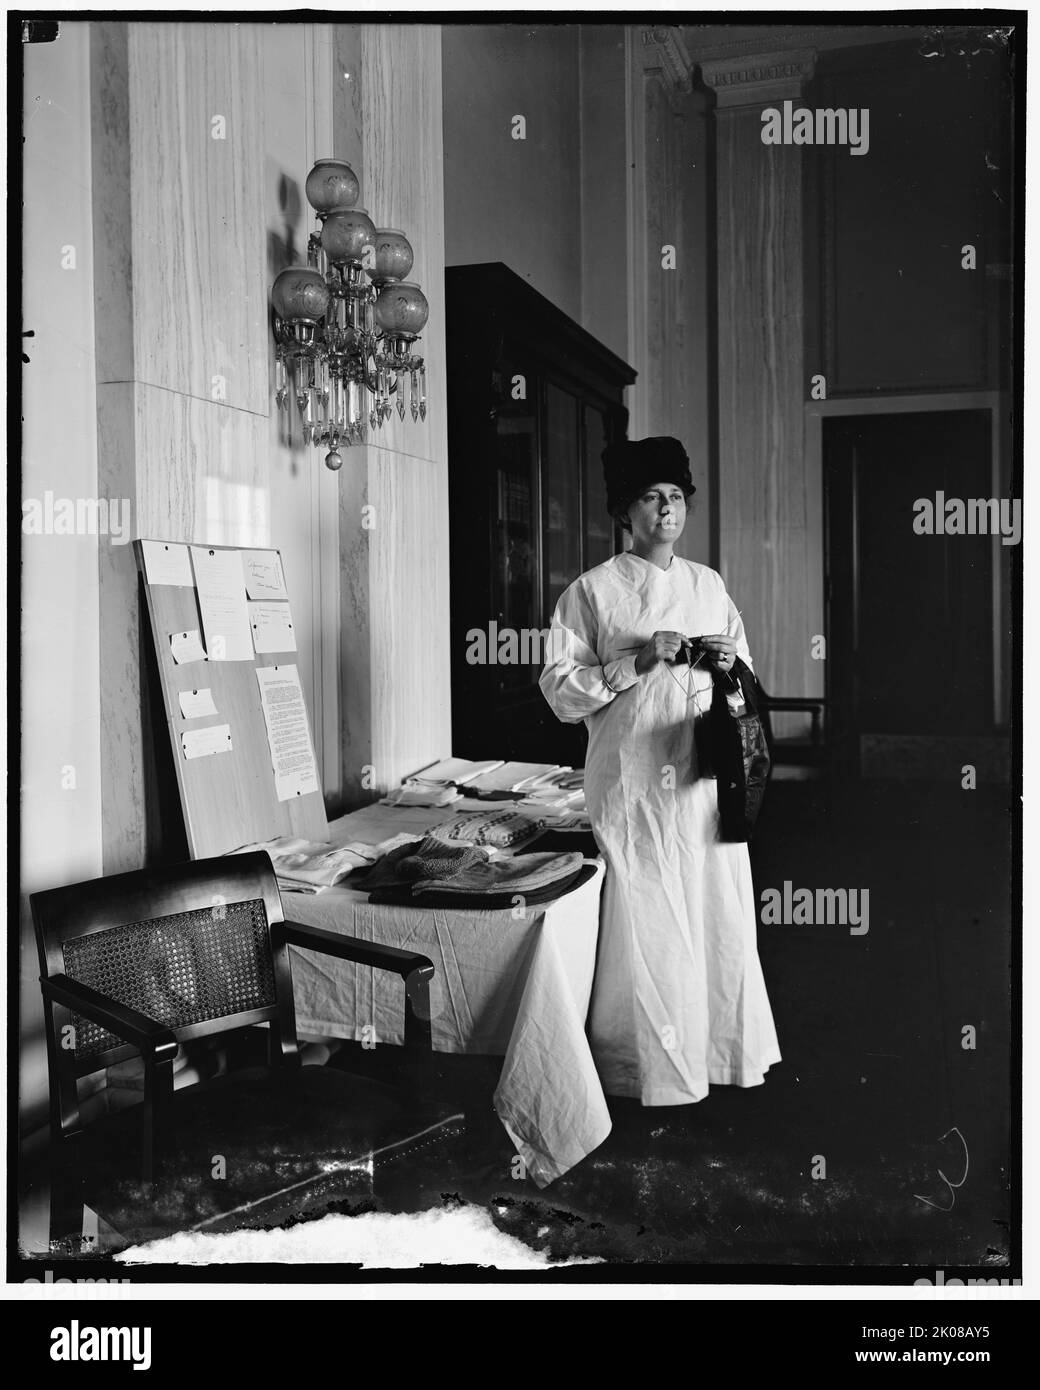 Mme Thomas Marshall, entre 1910 et 1920. Tricotage de femme, avec exposition de tabliers et d'articles tricotés en vente, peut-être un événement de collecte de fonds. Affiche écrite sur le papier-notes du Sénat américain. Banque D'Images